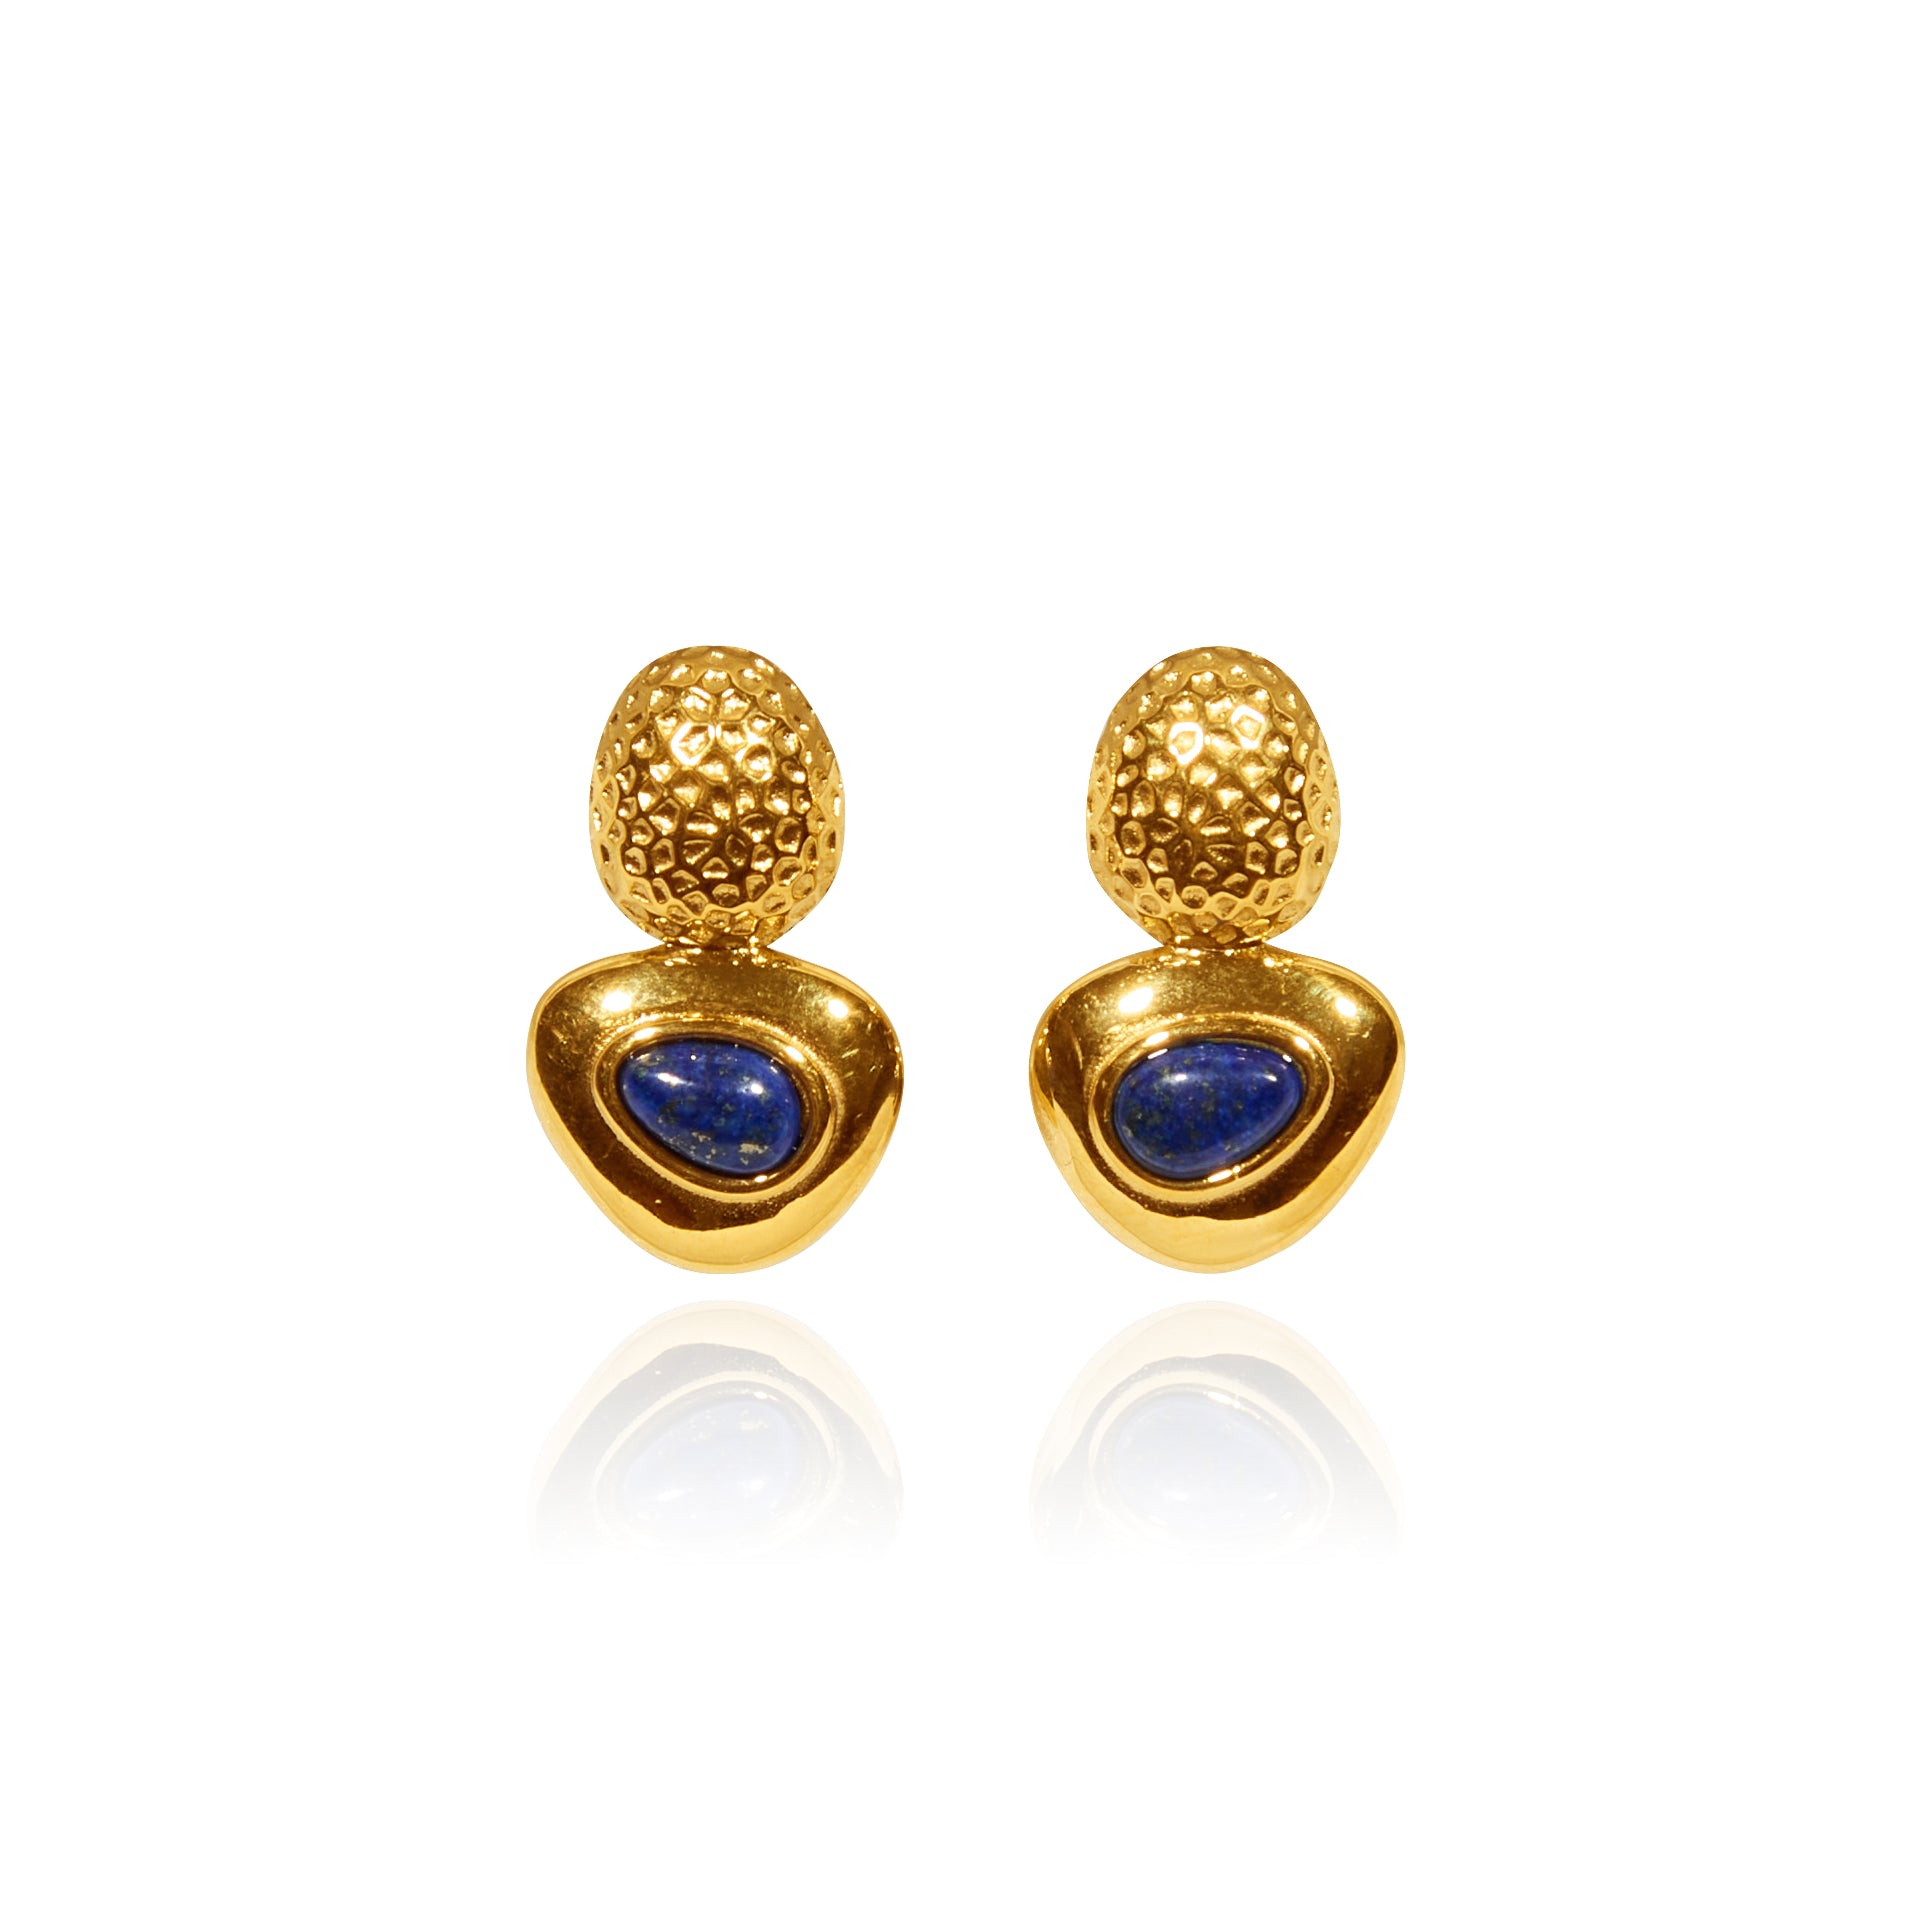 Tseatjewelry Women's Kamel Gold Plated Statement Earrings